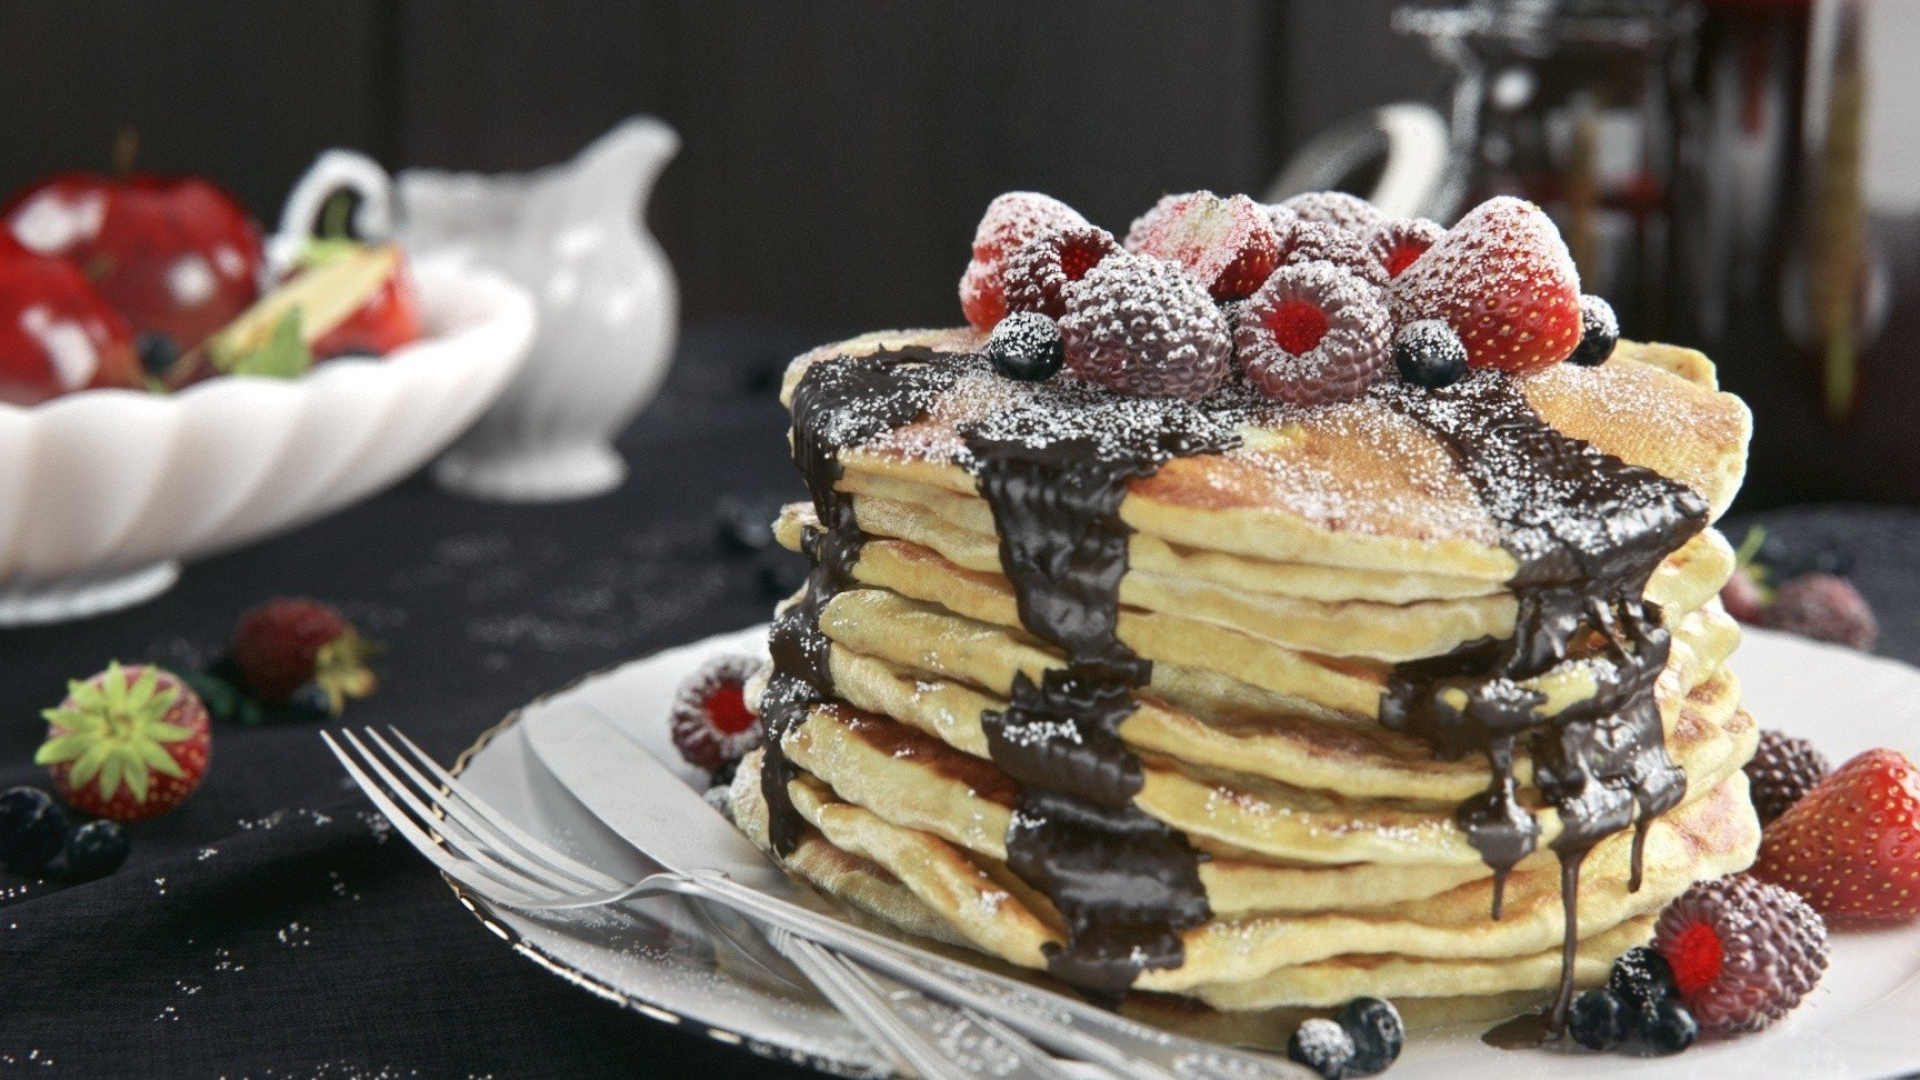 Pancake heaven, Delectable berry toppings, HD wallpapers, Breakfast delight, 1920x1080 Full HD Desktop